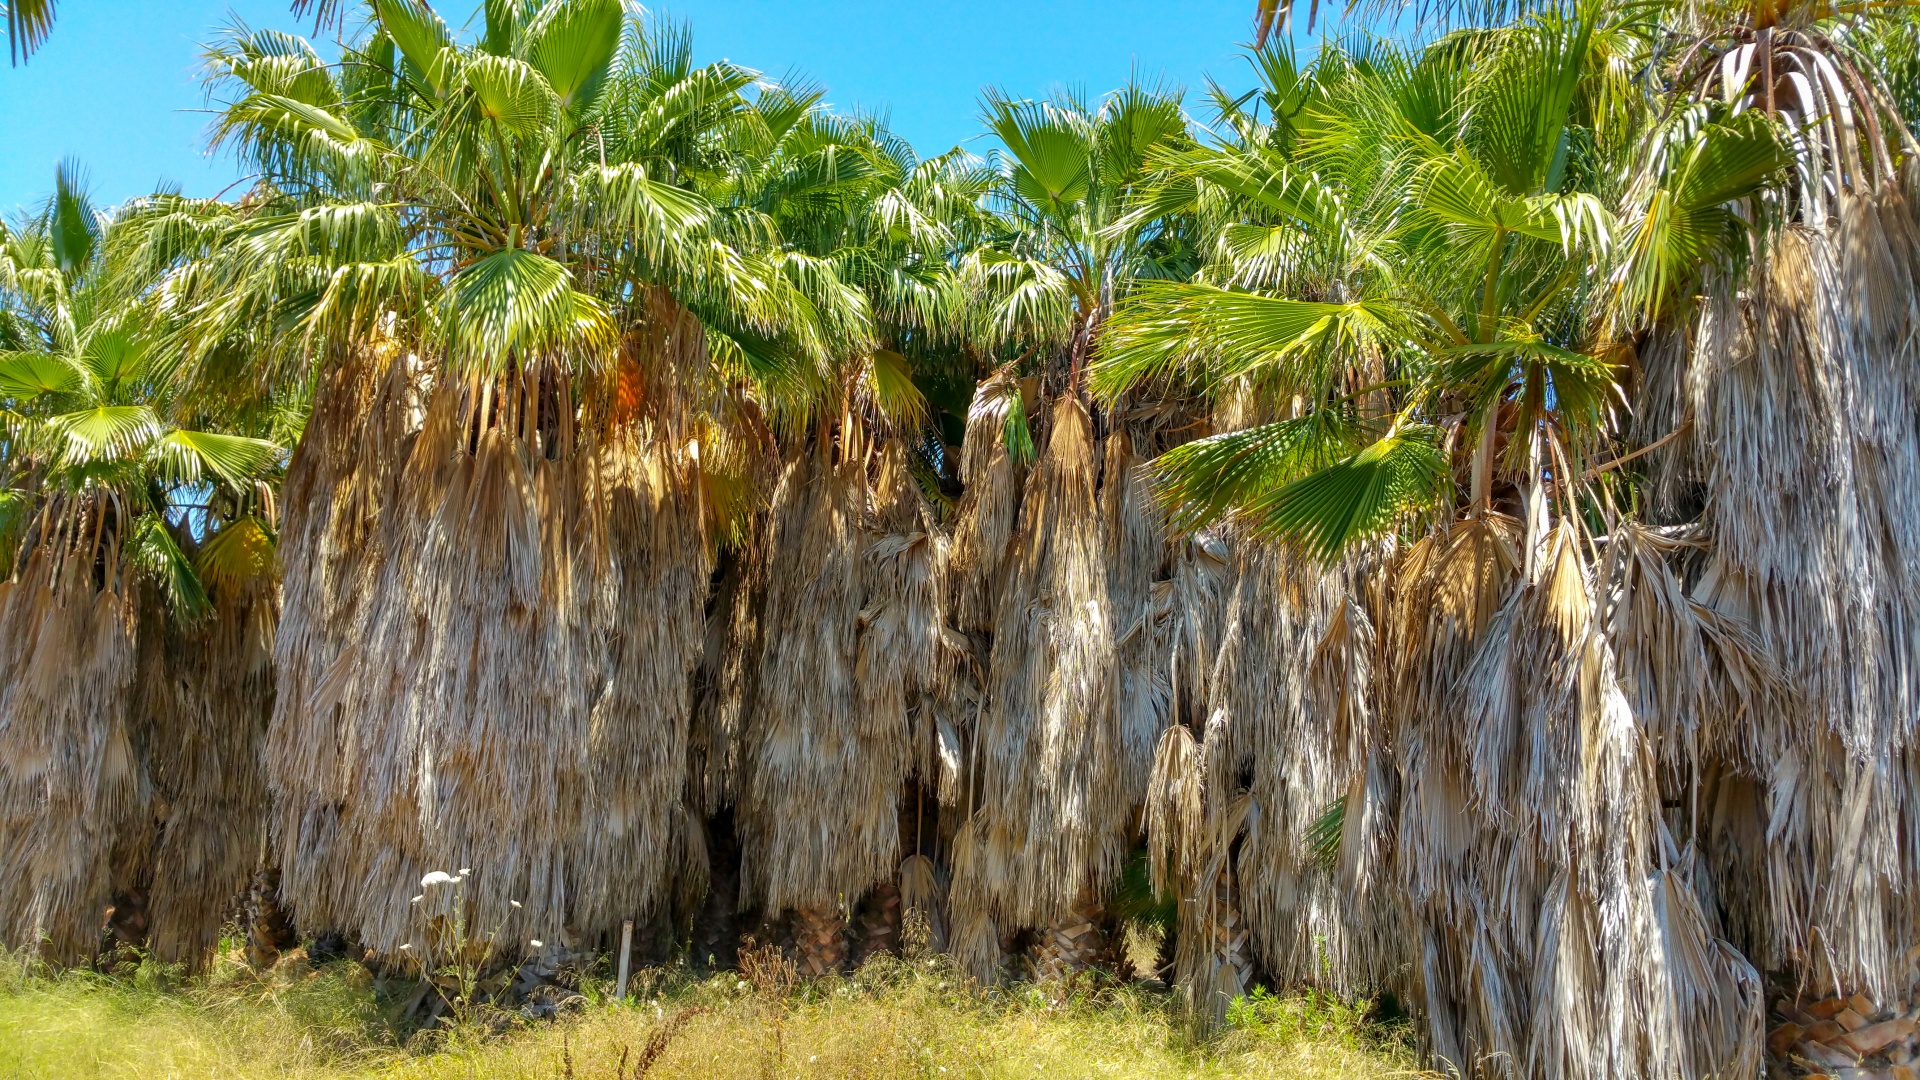 未修剪的棕榈树